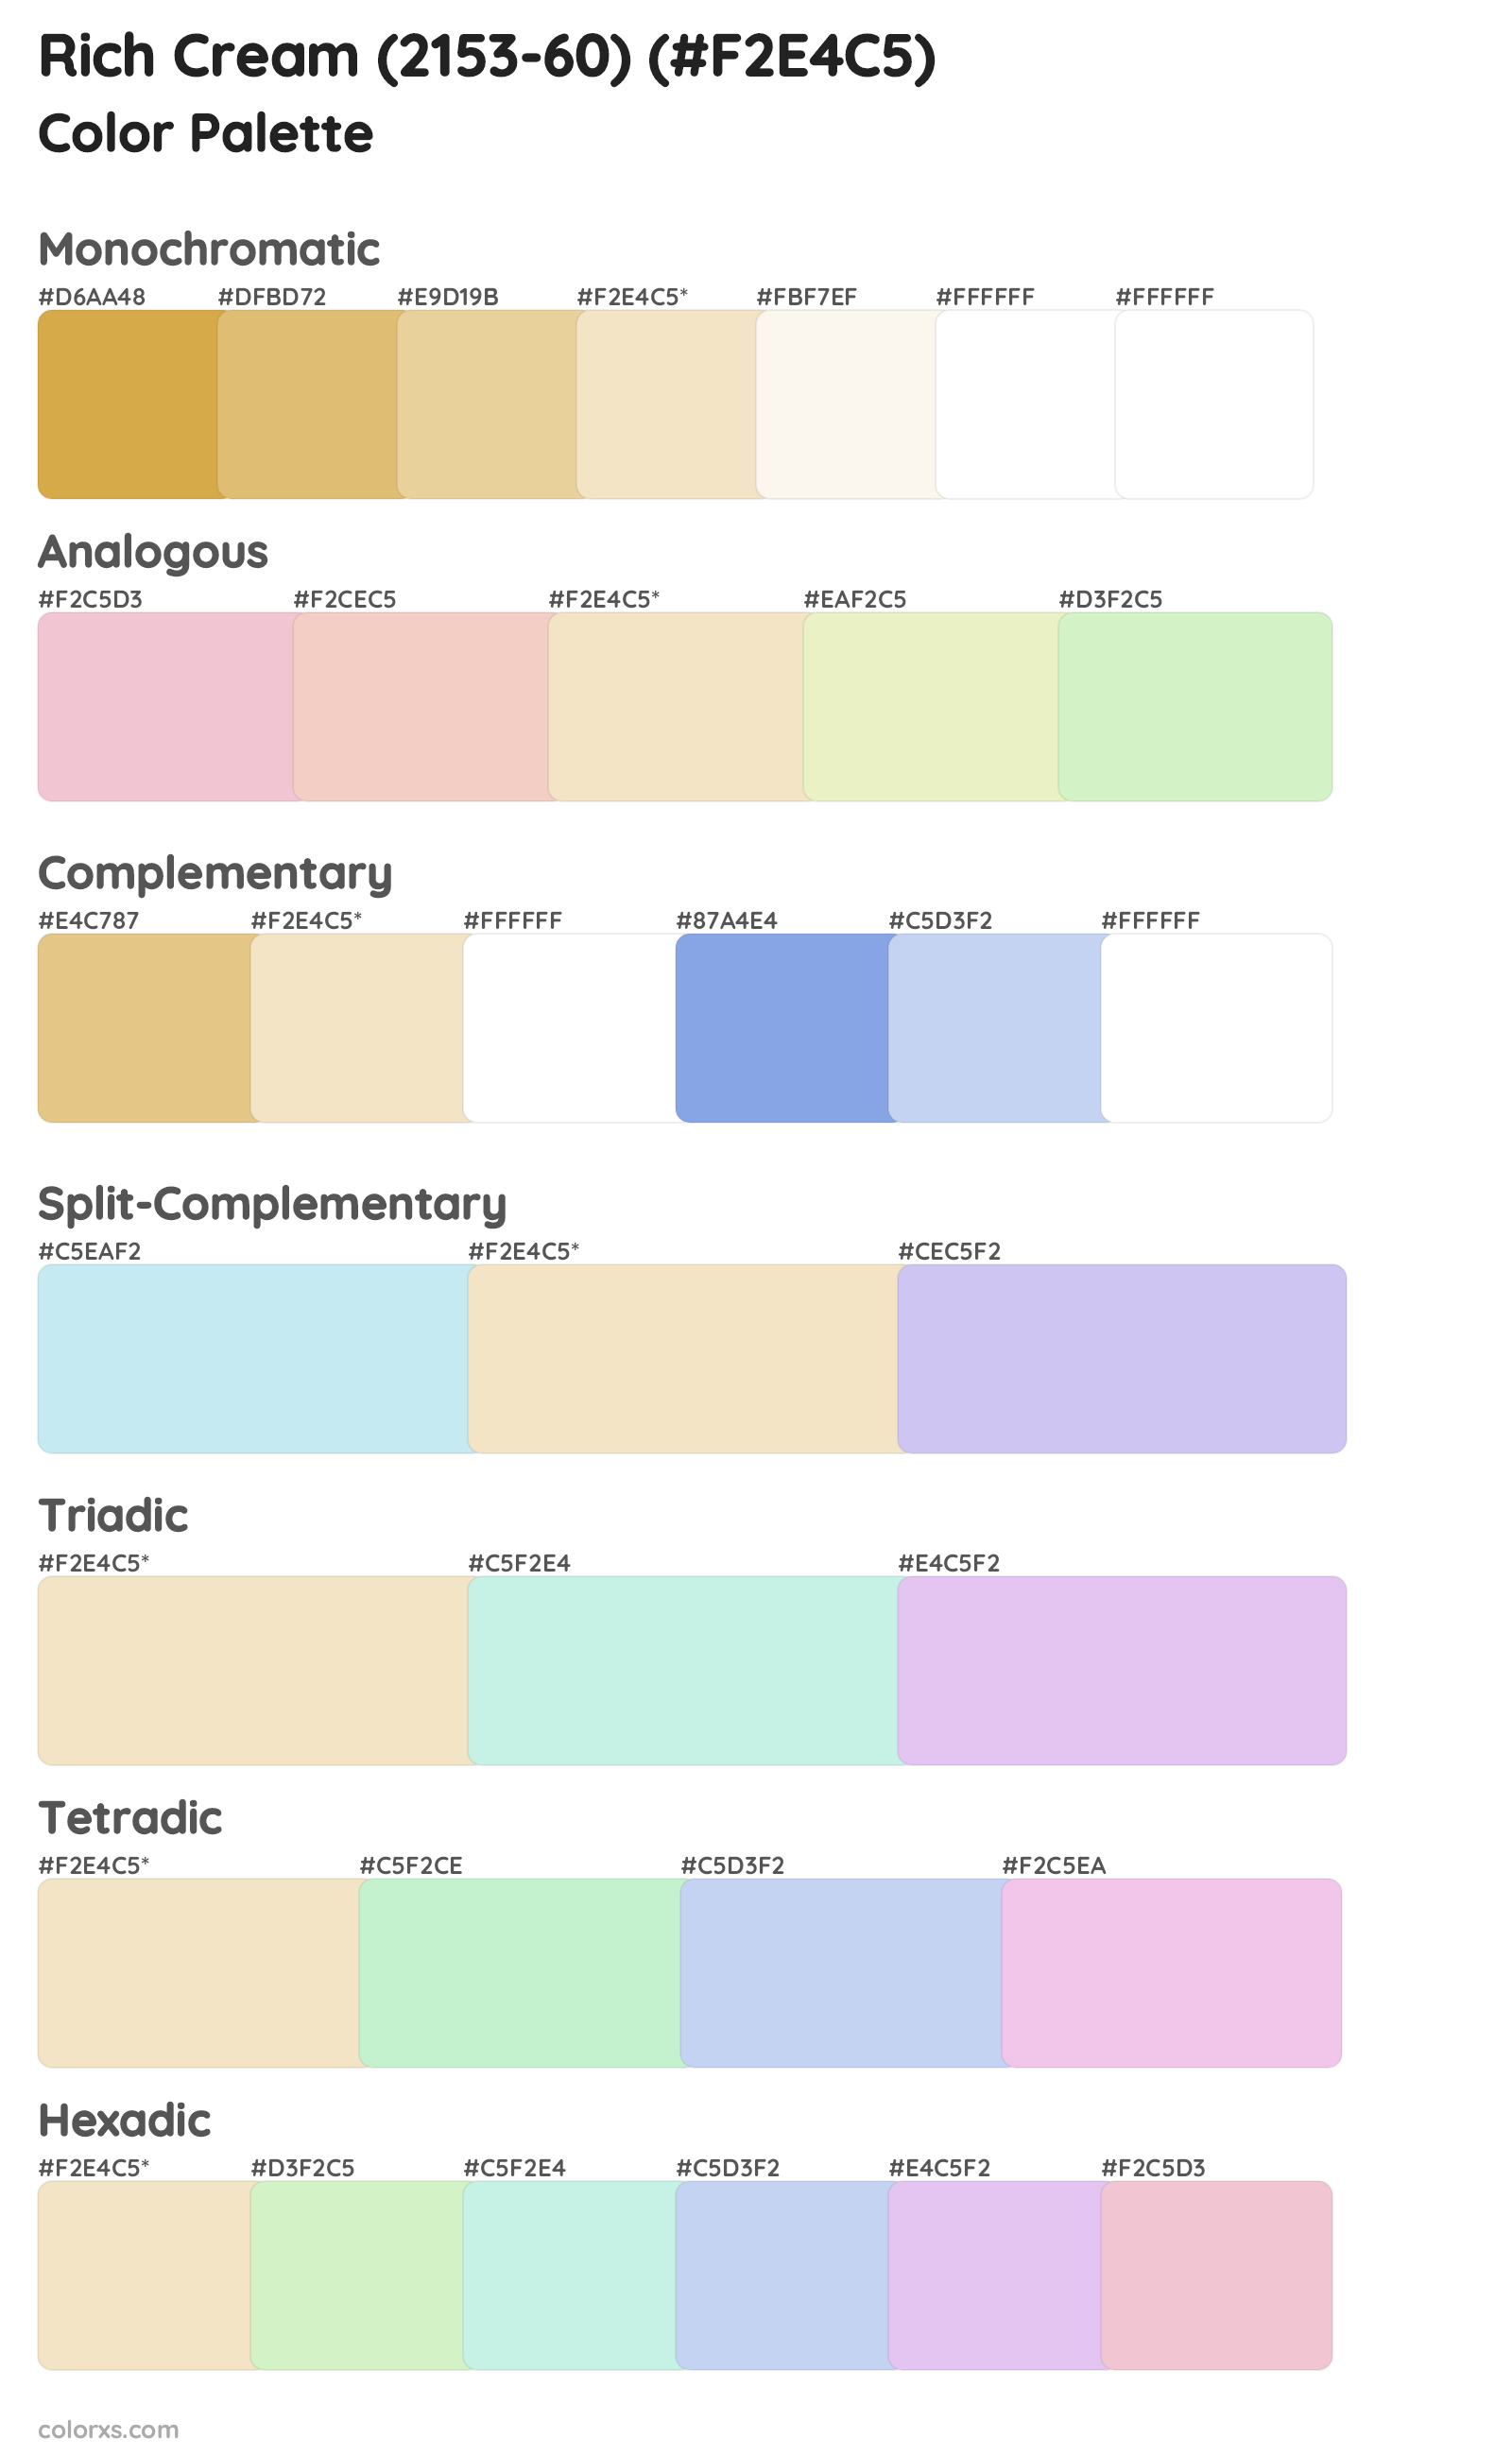 Rich Cream (2153-60) Color Scheme Palettes